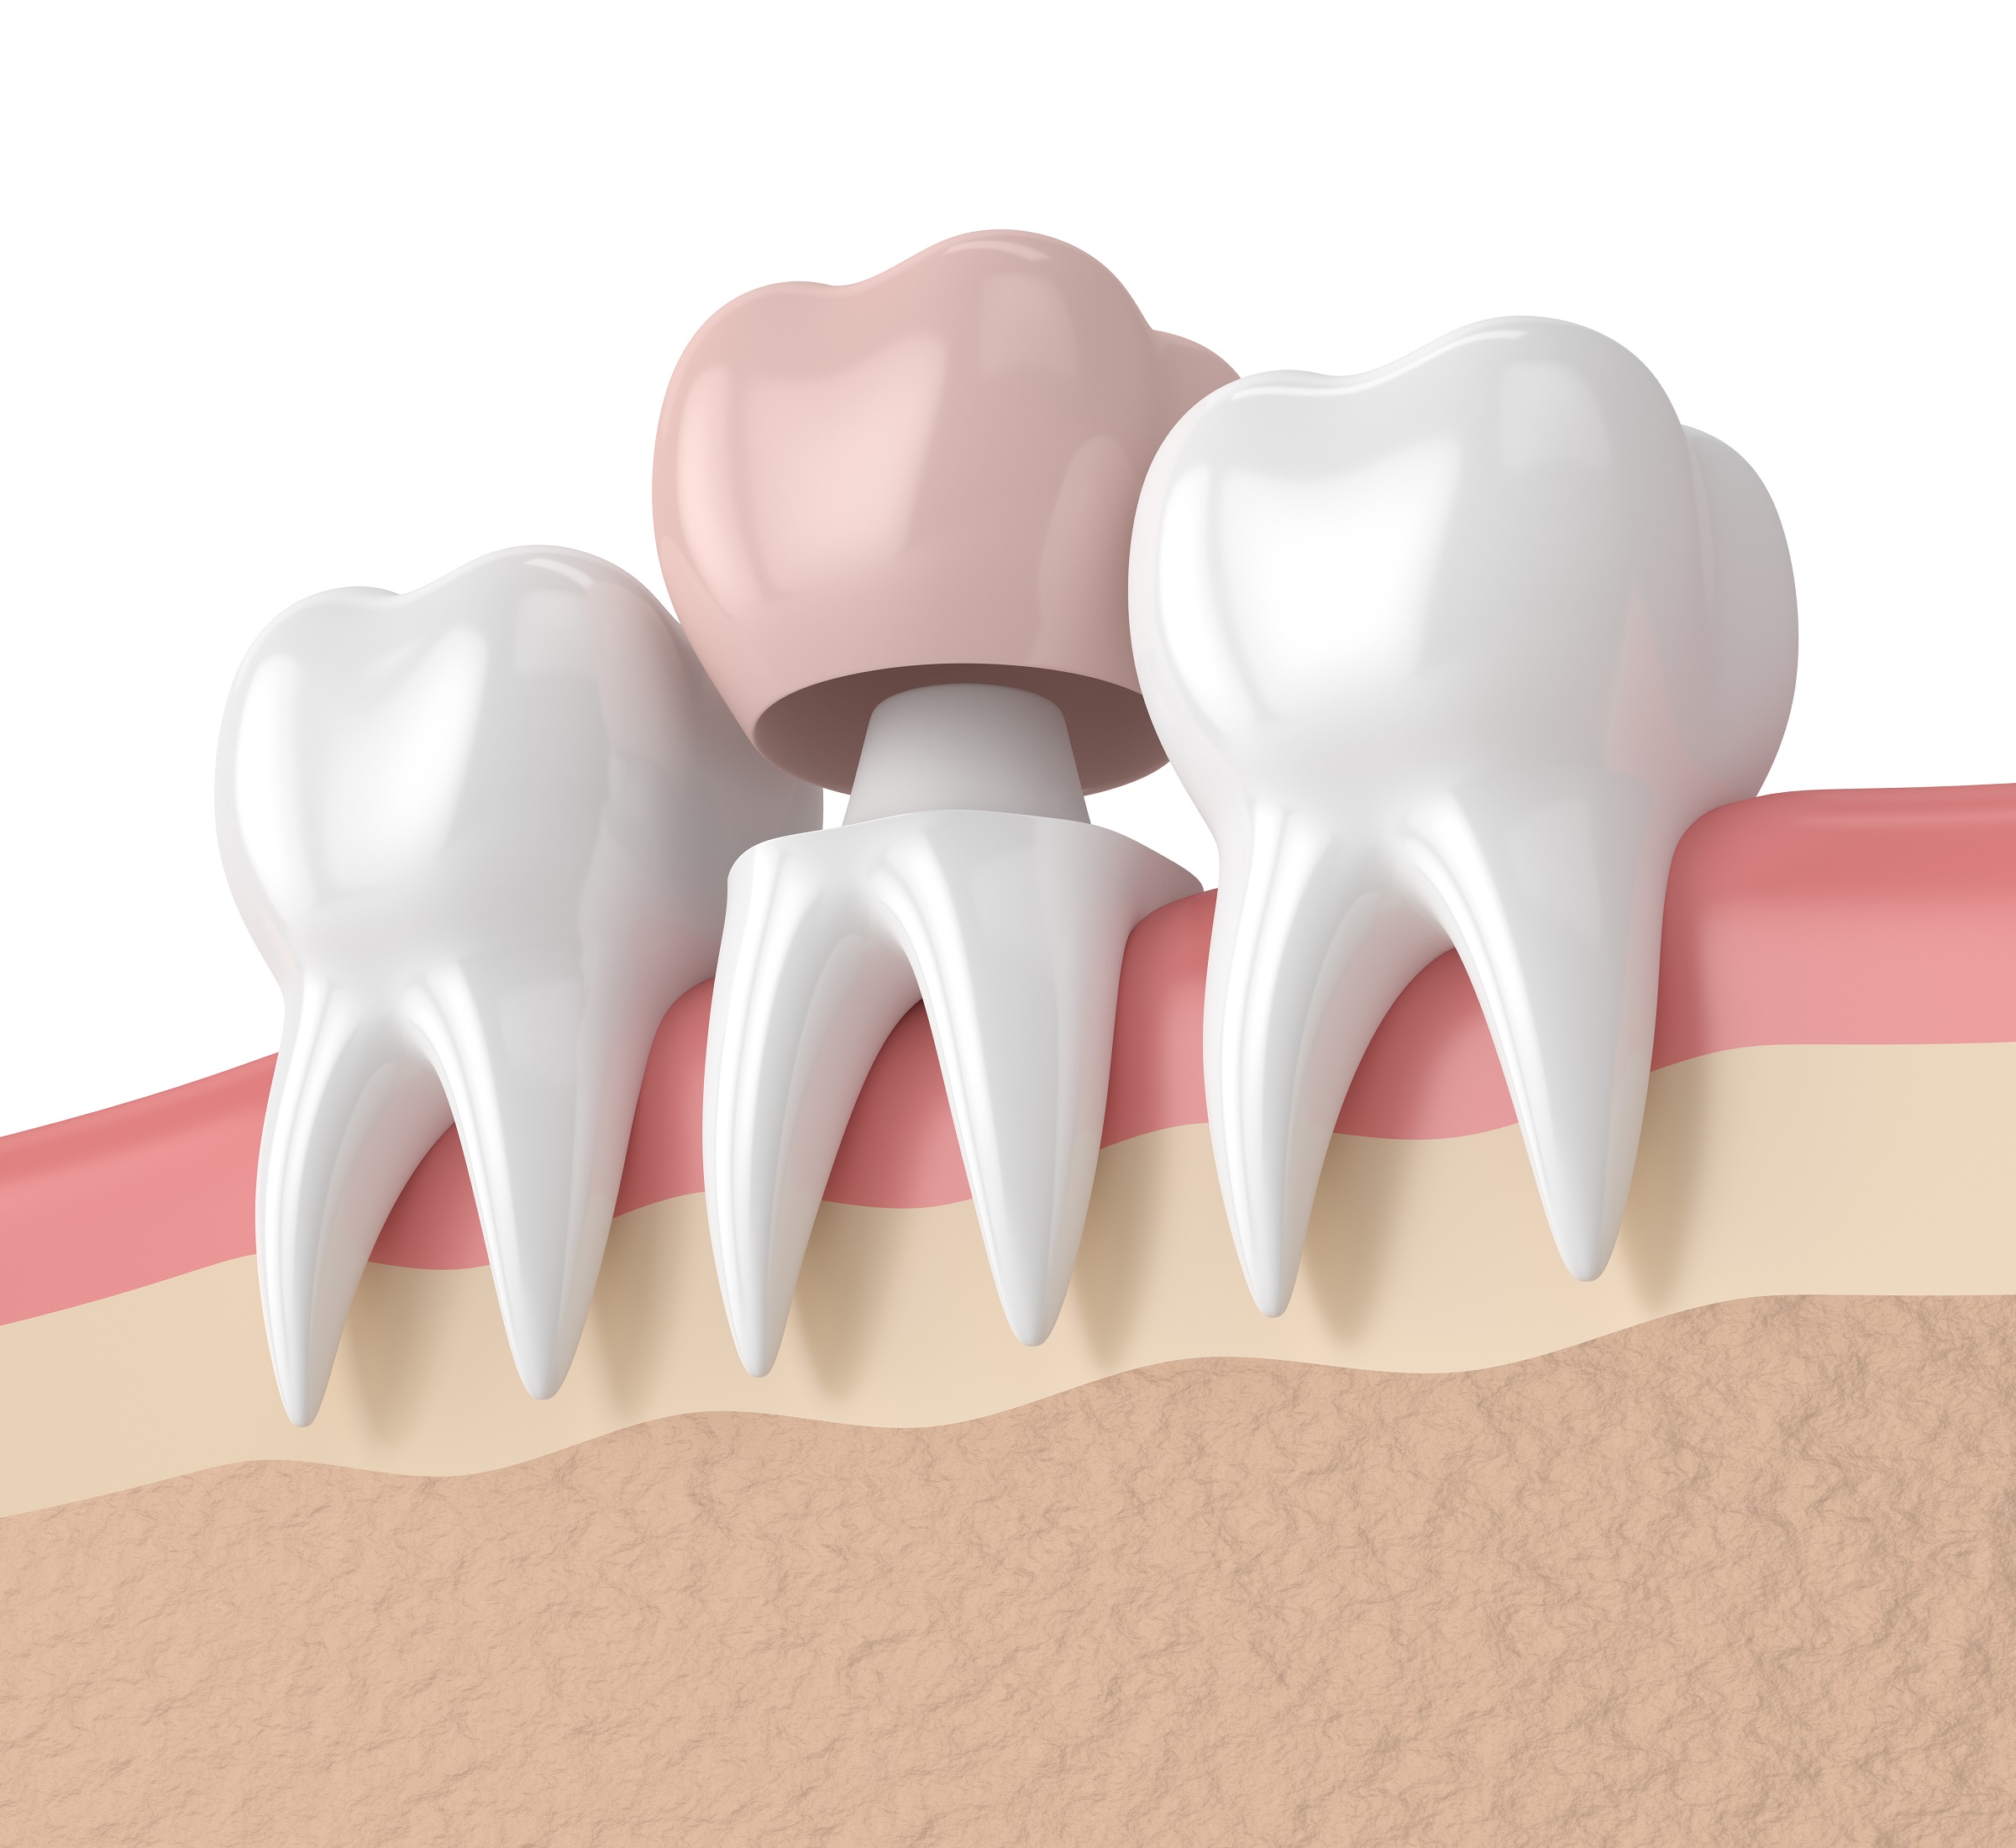 3d Render Of Teeth With Dental Crown Restoration